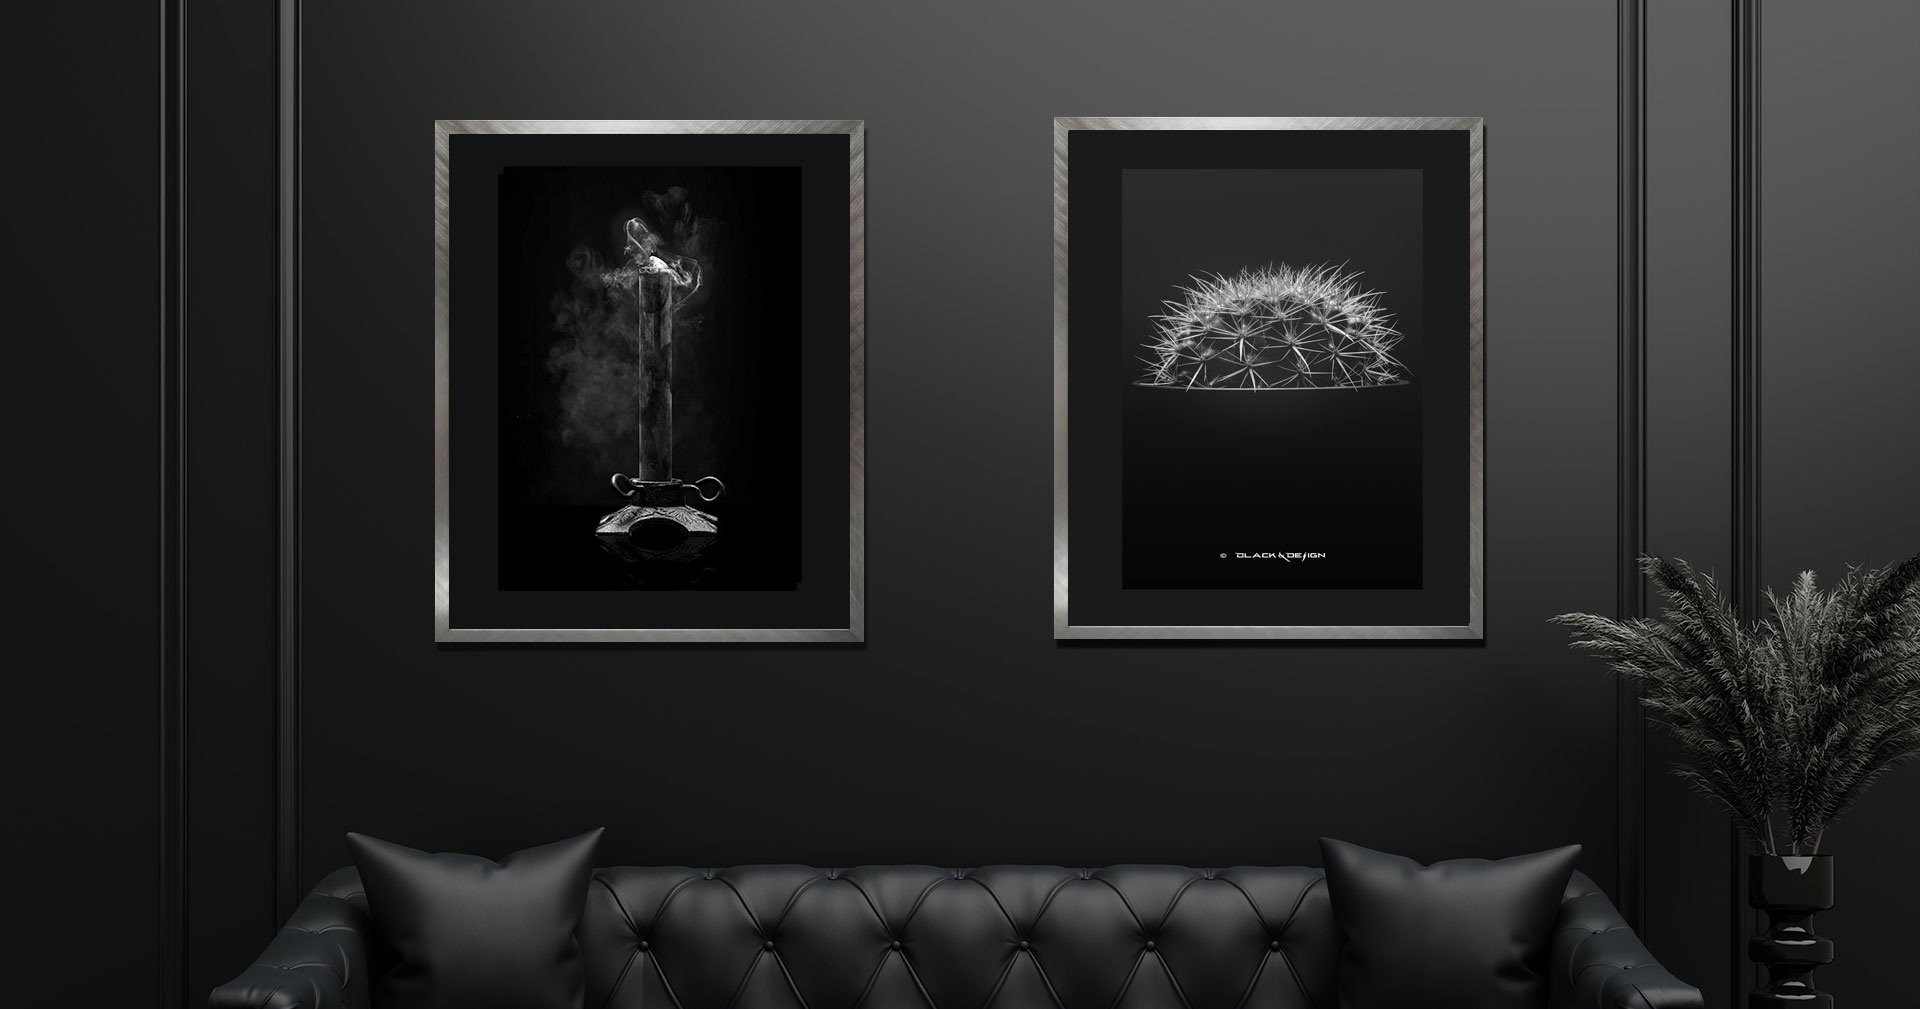 Foto-konst av två motiv ur kategorin "Darker" på Black & Design - en svart ljusstake vars ljus precis släckts, och en kaktus med fokus på taggarna